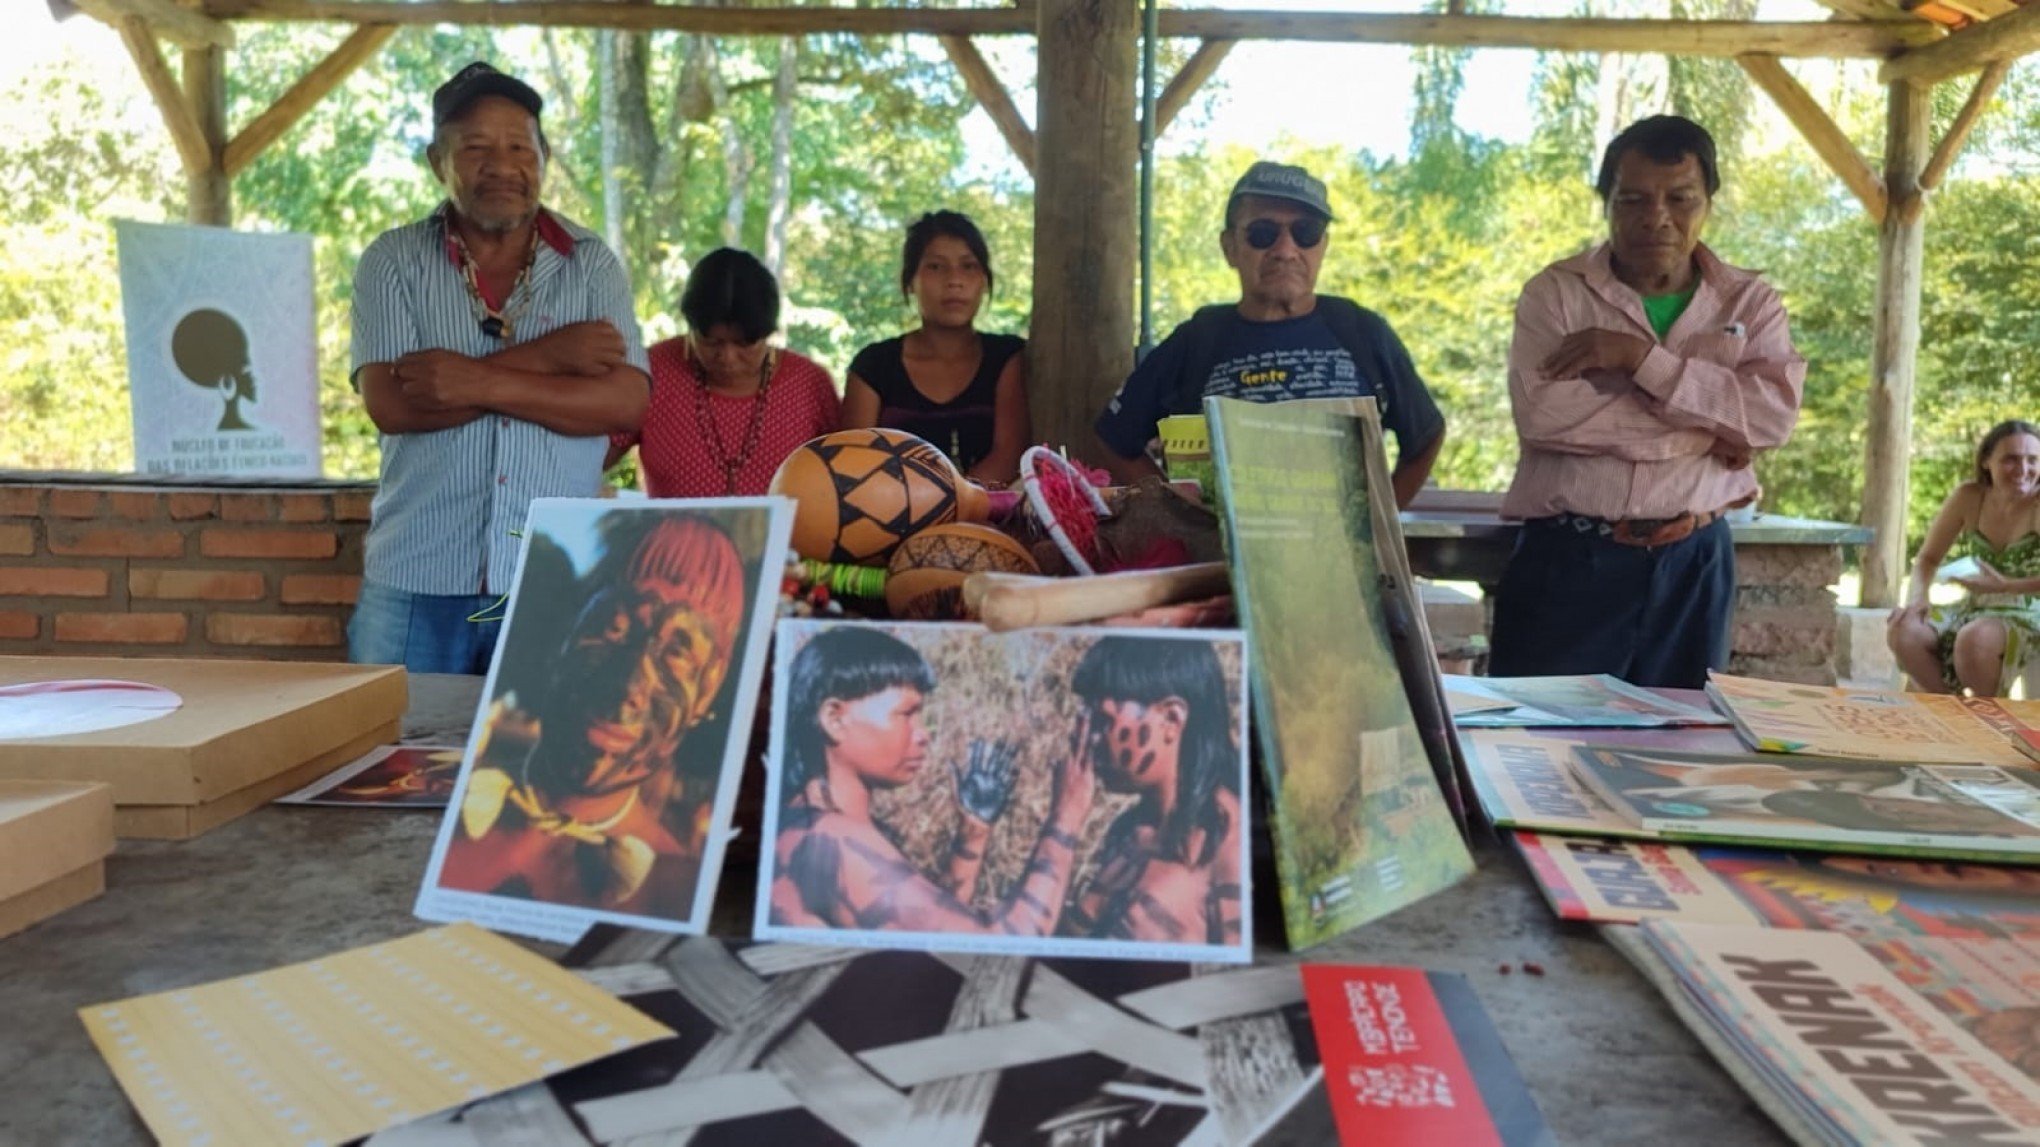 Cultura IndÃ­gena em foco: professores leopoldenses participam de formaÃ§Ã£o com os povos indÃ­genas Kaingang (SÃ£o Leopoldo) e Mbya-Guarani (Eldorado do Sul) no Parque Imperatriz